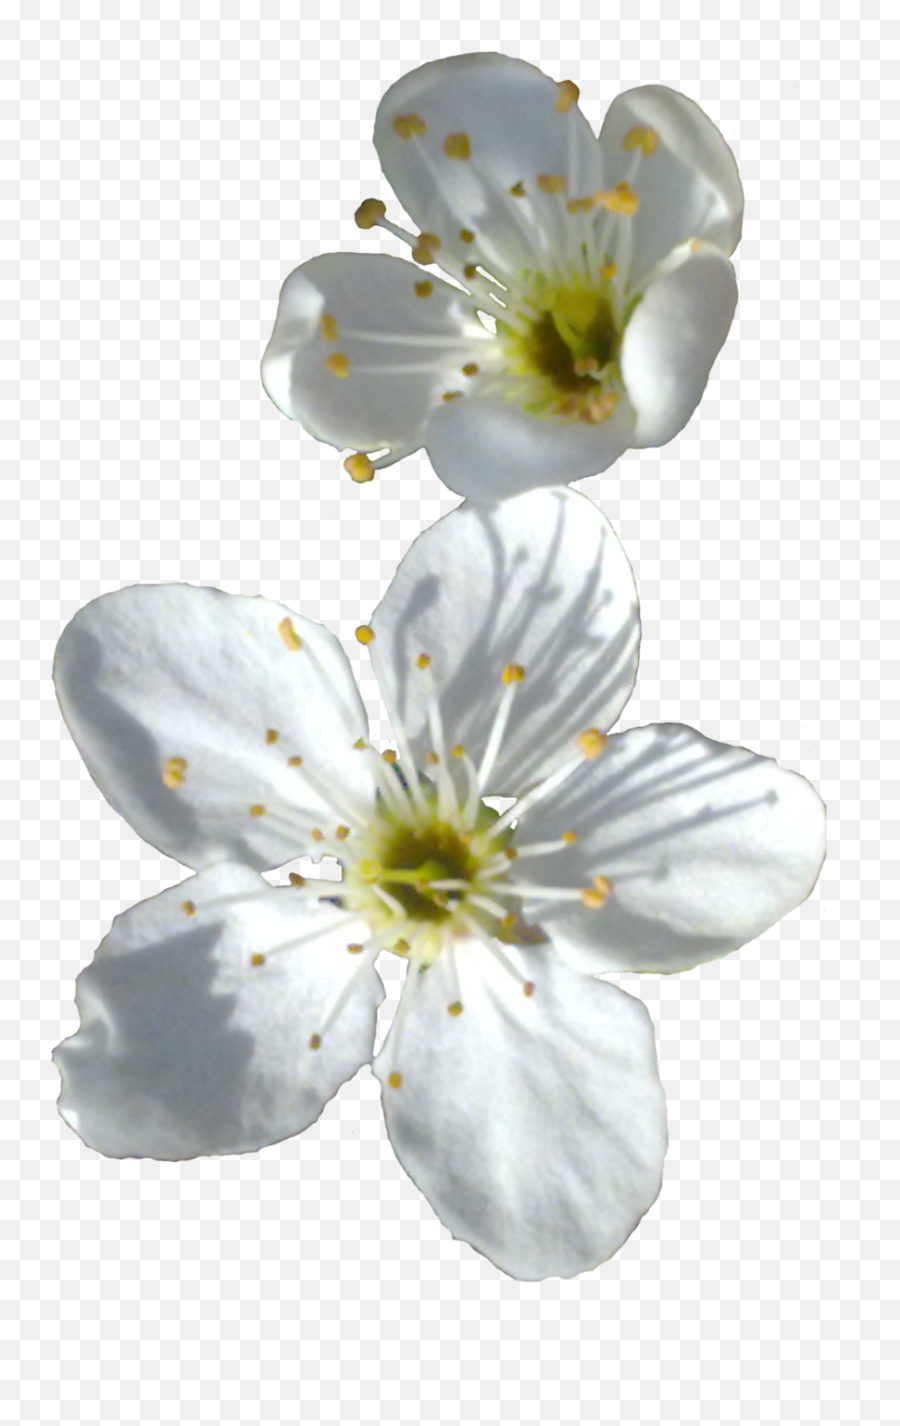 Spring Flower Png Transparent Image - Spring Flower Png,White Flower Transparent